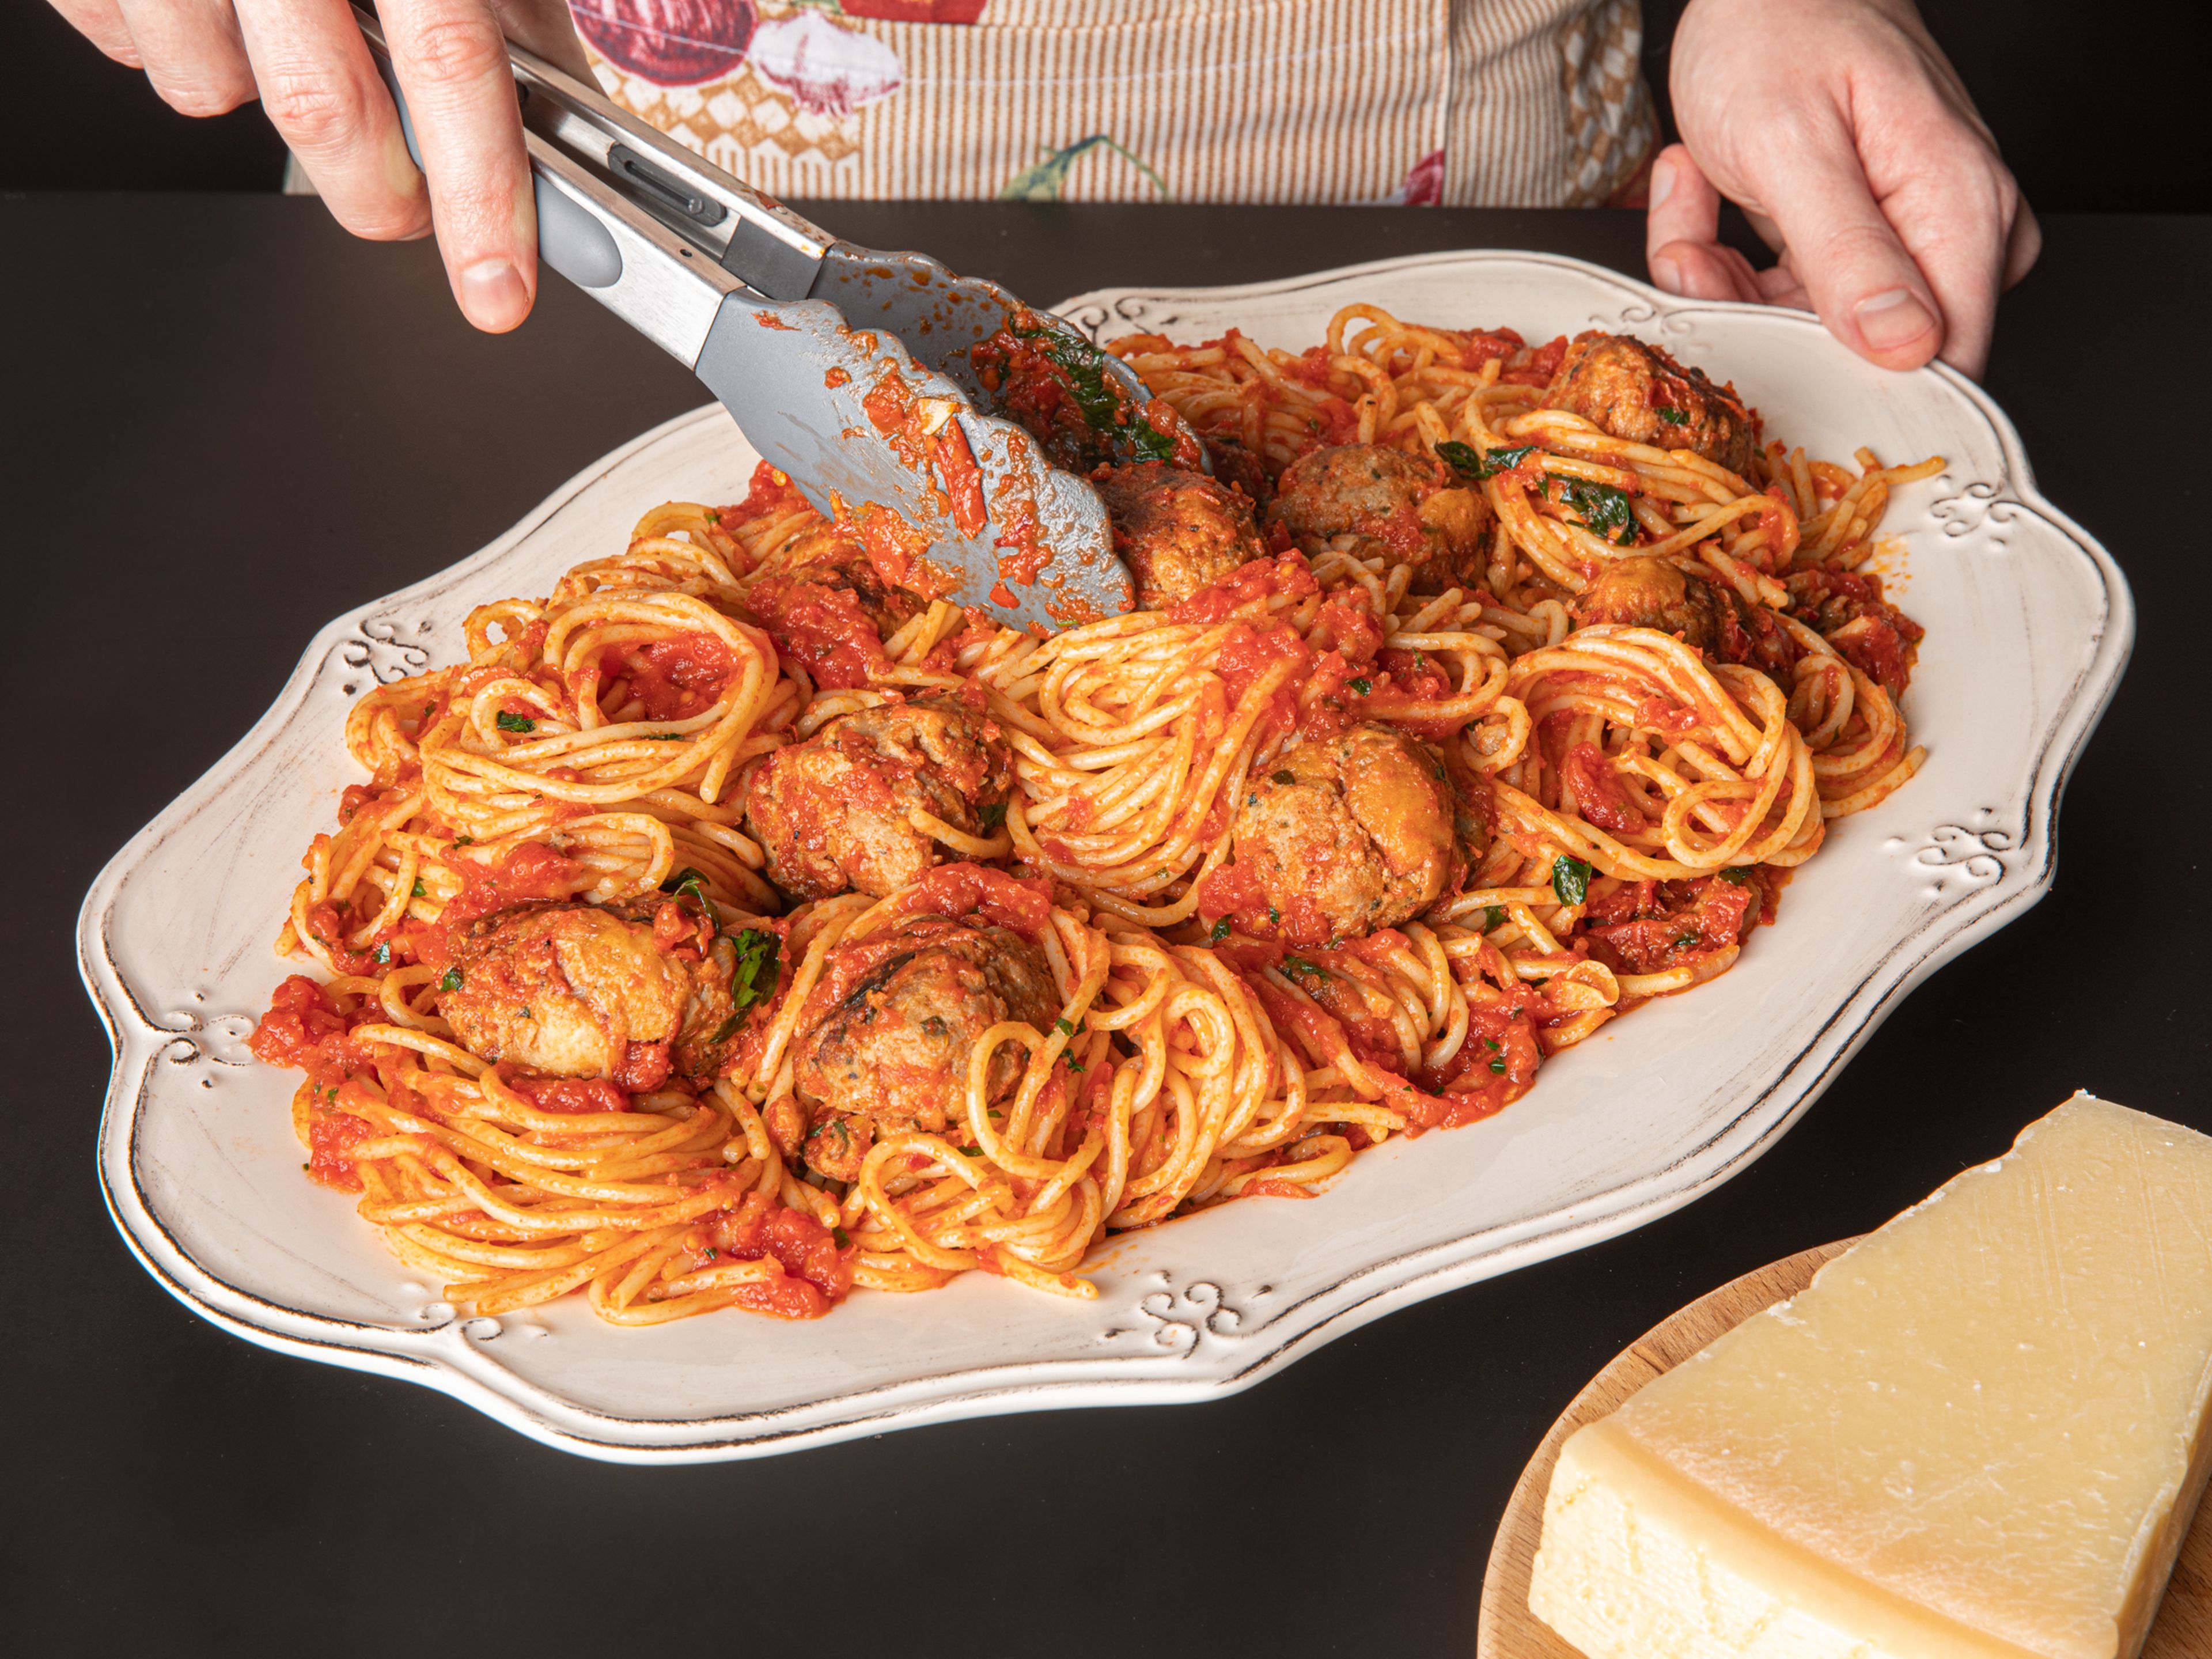 Spaghetti in kochendes Salzwasser geben und bissfest kochen. Etwa nach der Hälfte der Kochzeit eine große Kelle Nudelwasser in die Tomatensoße geben. Die Soße abschmecken. Dann die Fleischbällchen hinzufügen, vorsichtig umrühren und noch kurz köcheln lassen, bis sie durchgewärmt sind. Spaghetti abgießen und zusammen mit etwas Petersilie in die Soße geben, alles vorsichtig umrühren. Servieren und mit Petersilie garnieren. Guten Appetit!